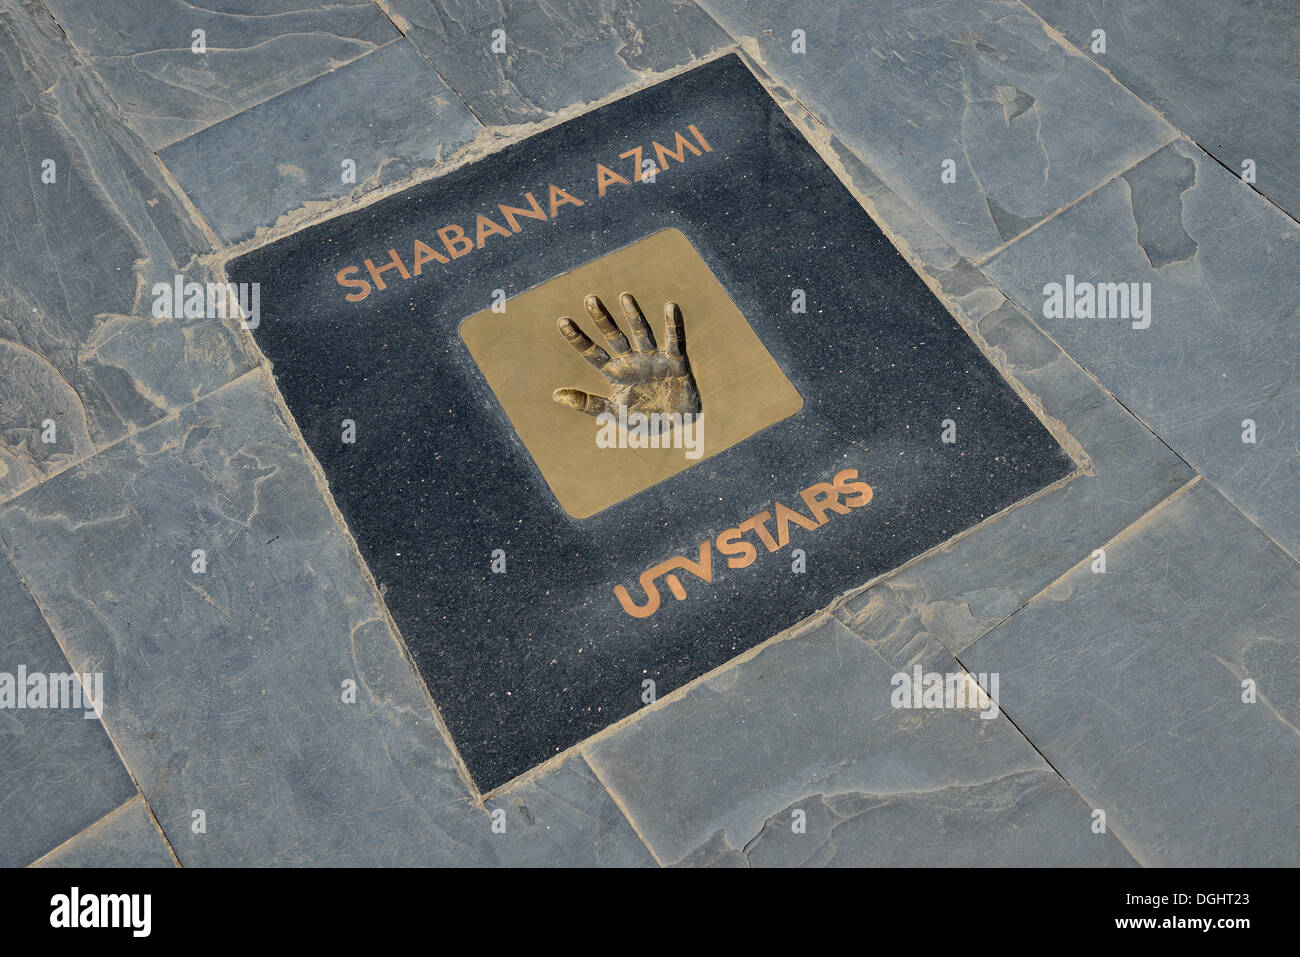 Handprint of Bollywood actress Shabana Azmi at the Walk of the Stars, Land's End, Mumbai, Maharashtra, India Stock Photo